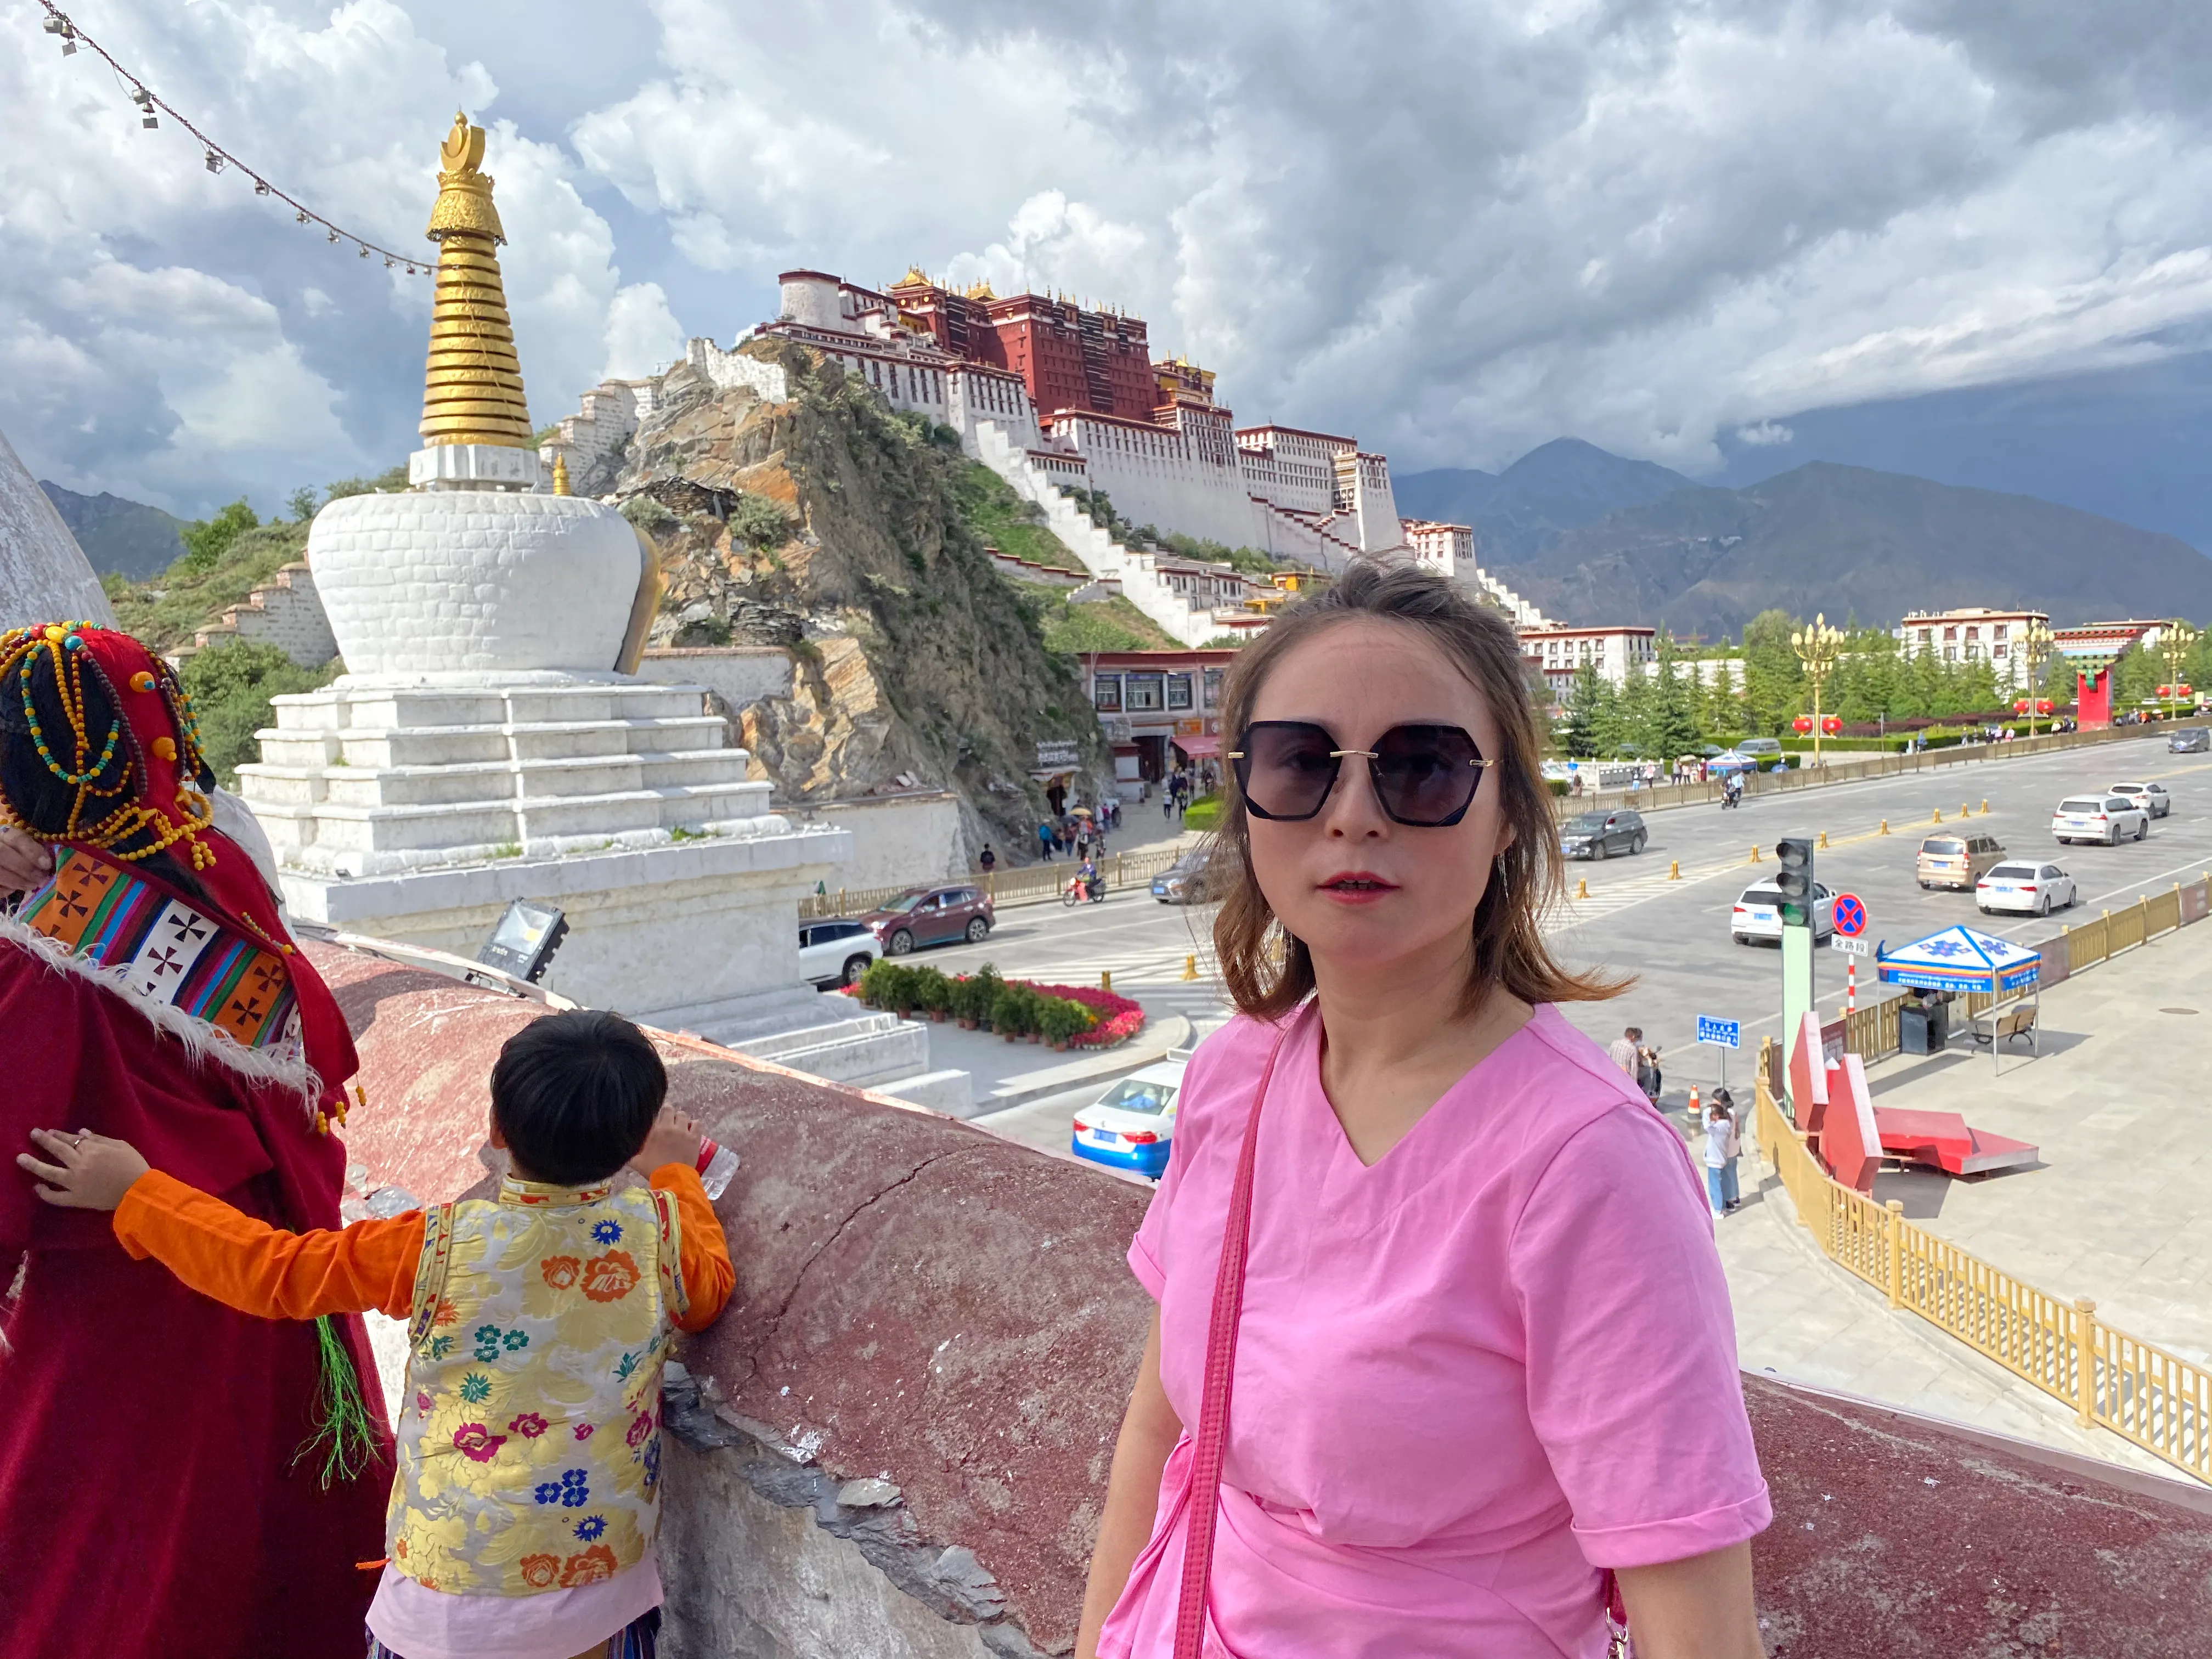 10天假期怎么玩转西藏旅行（含费用，攻略）